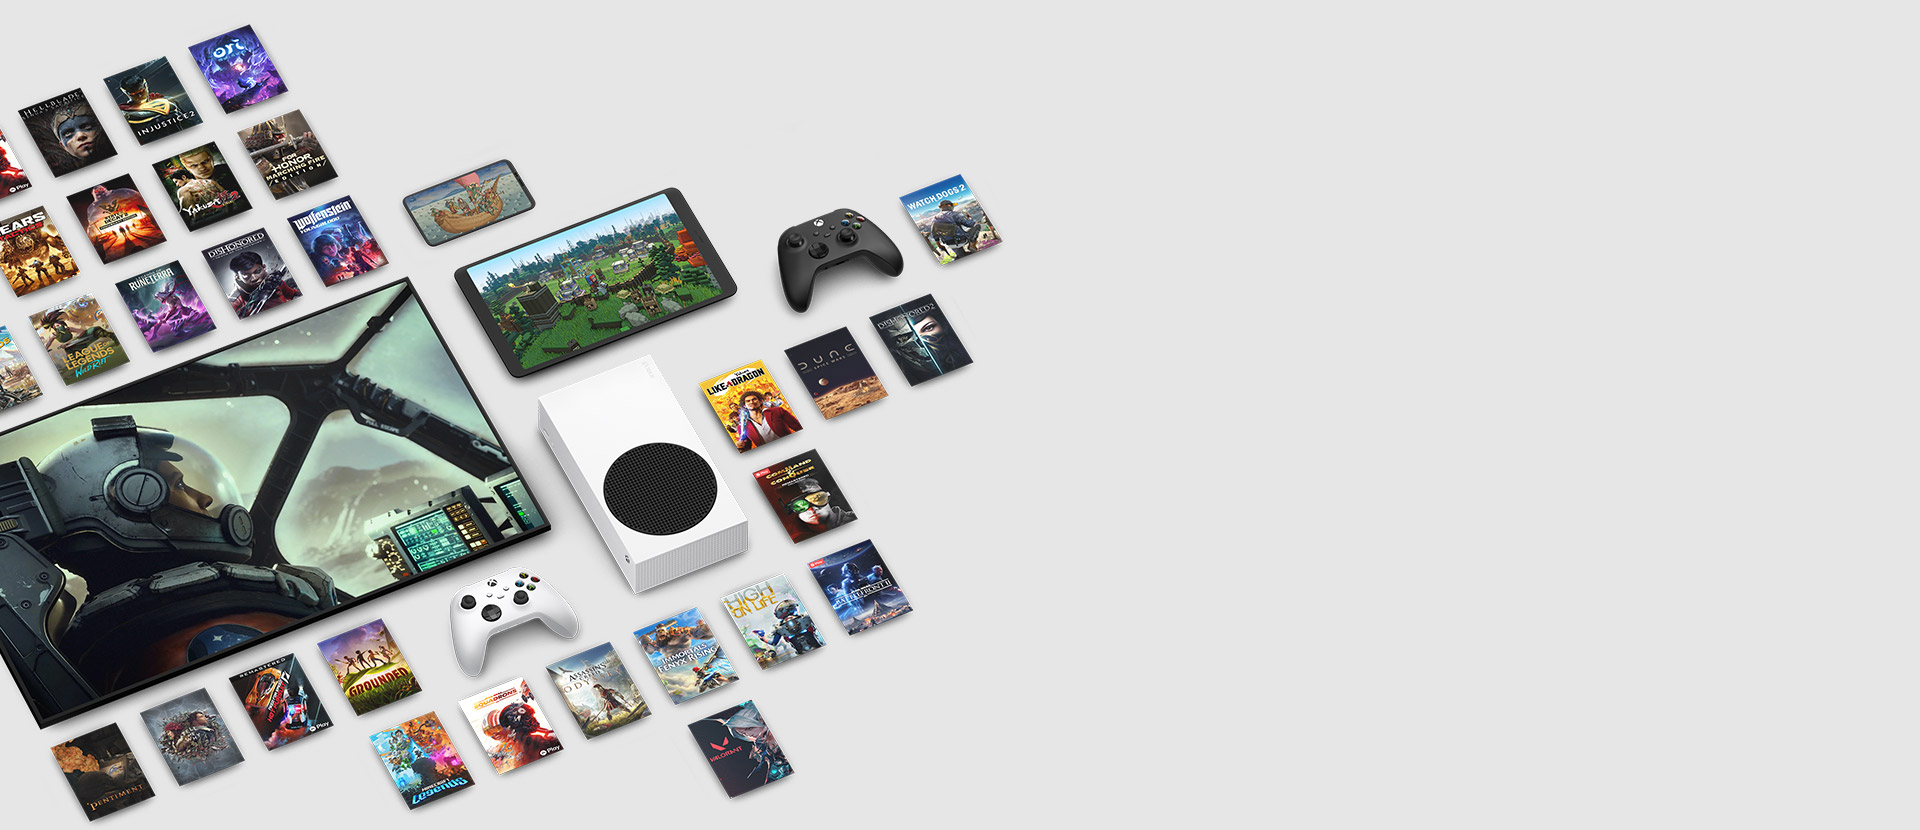 Arte de varios juegos disponibles ahora con Xbox Game Pass Ultimate rodea varios dispositivos, incluyendo una consola, teléfono móvil, una tableta, un televisor inteligente y mandos.